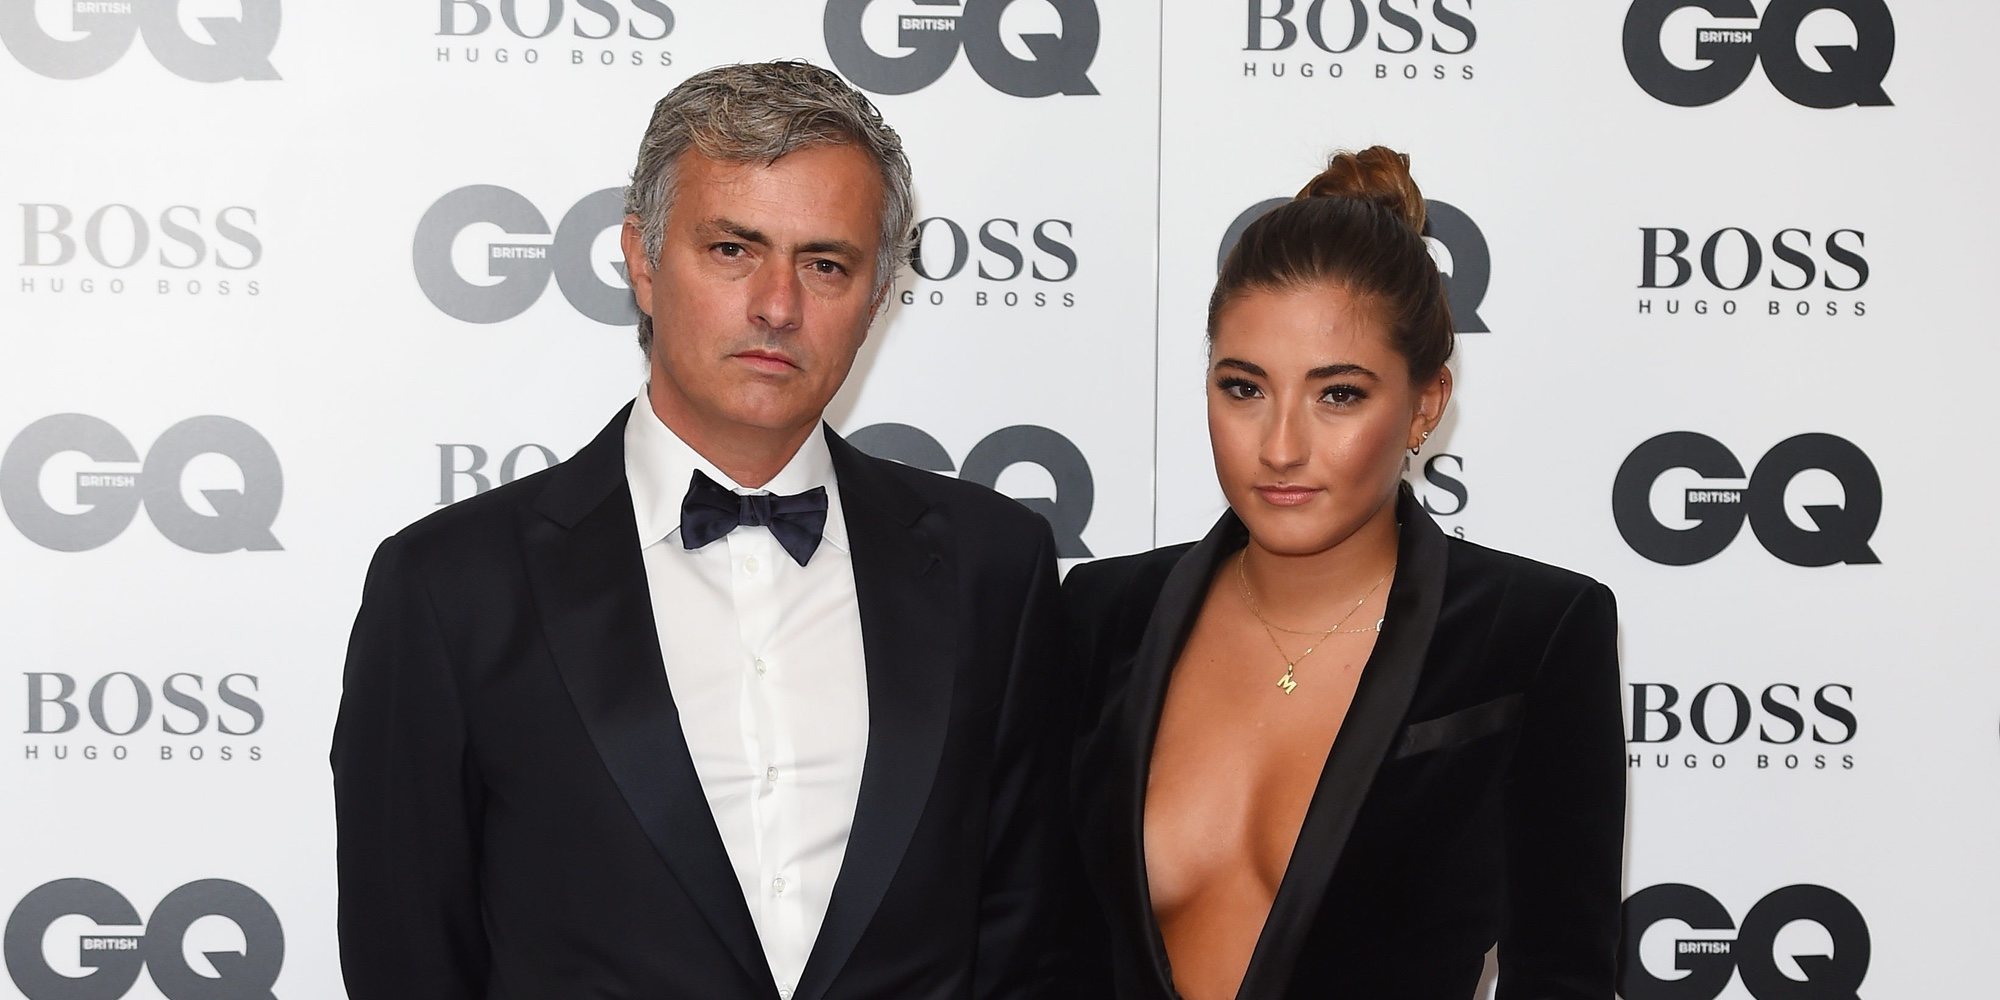 Matilde, la hija influencer del entrenador Mourinho, se separa de su novio tras cuatro años de relación